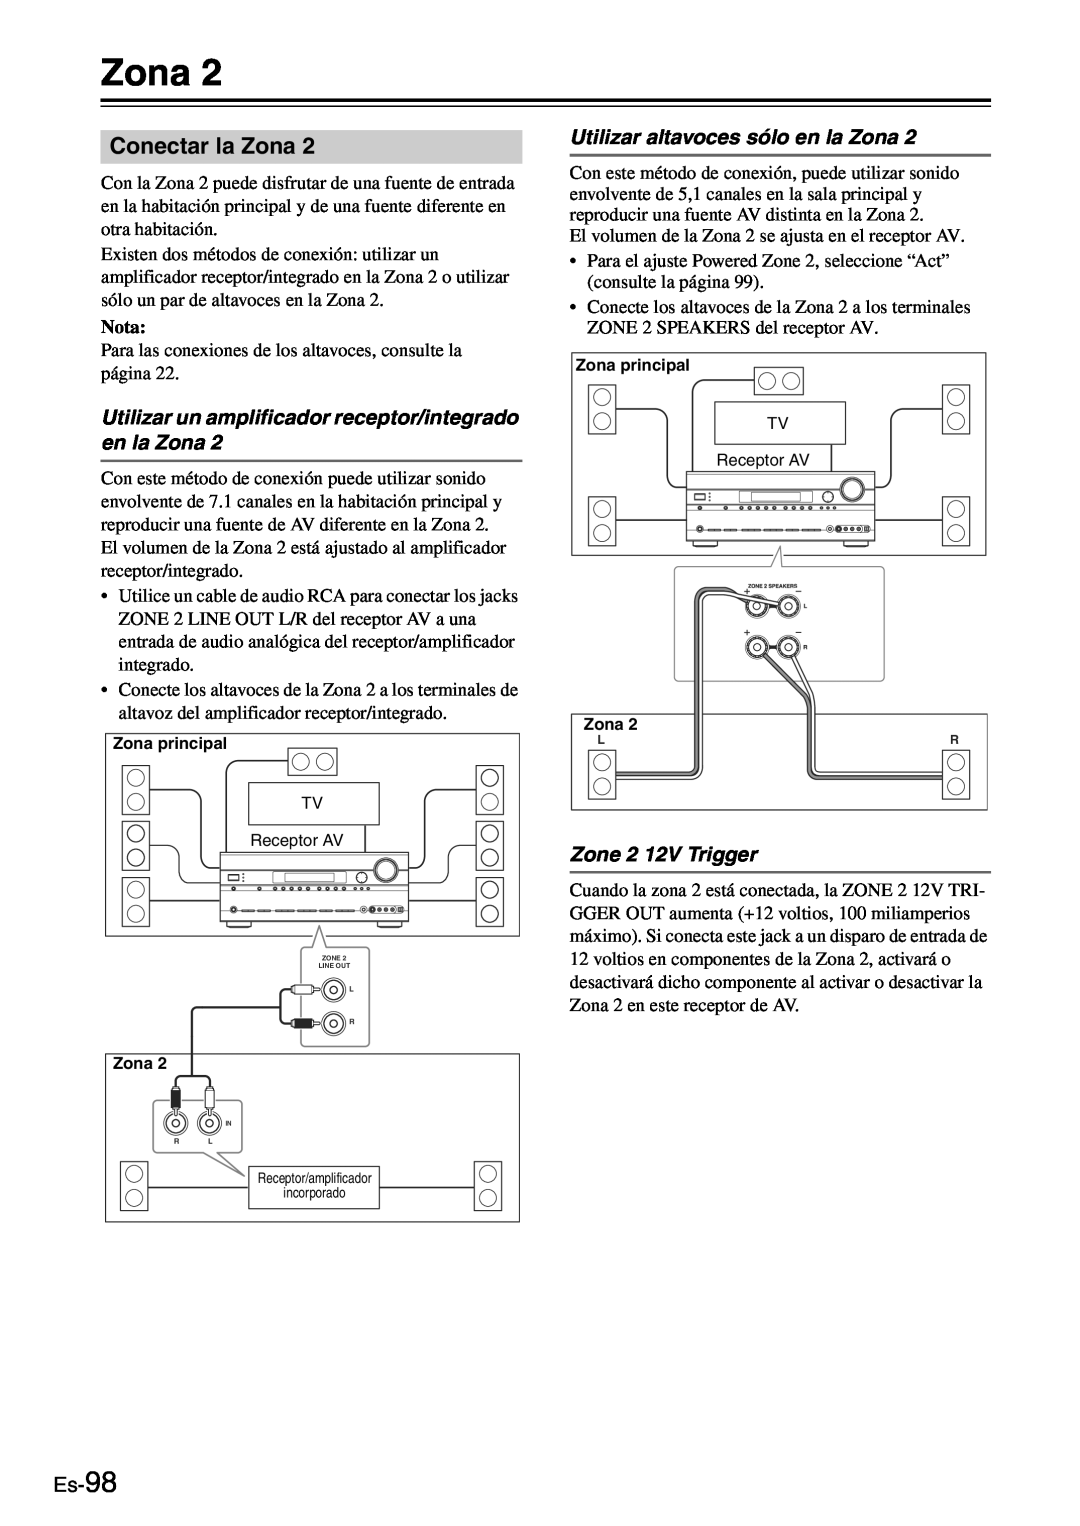 Onkyo TX-SR705 manual Conectar la Zona, Utilizar altavoces sólo en la Zona, Zone 2 12V Trigger, Es-98, Nota 